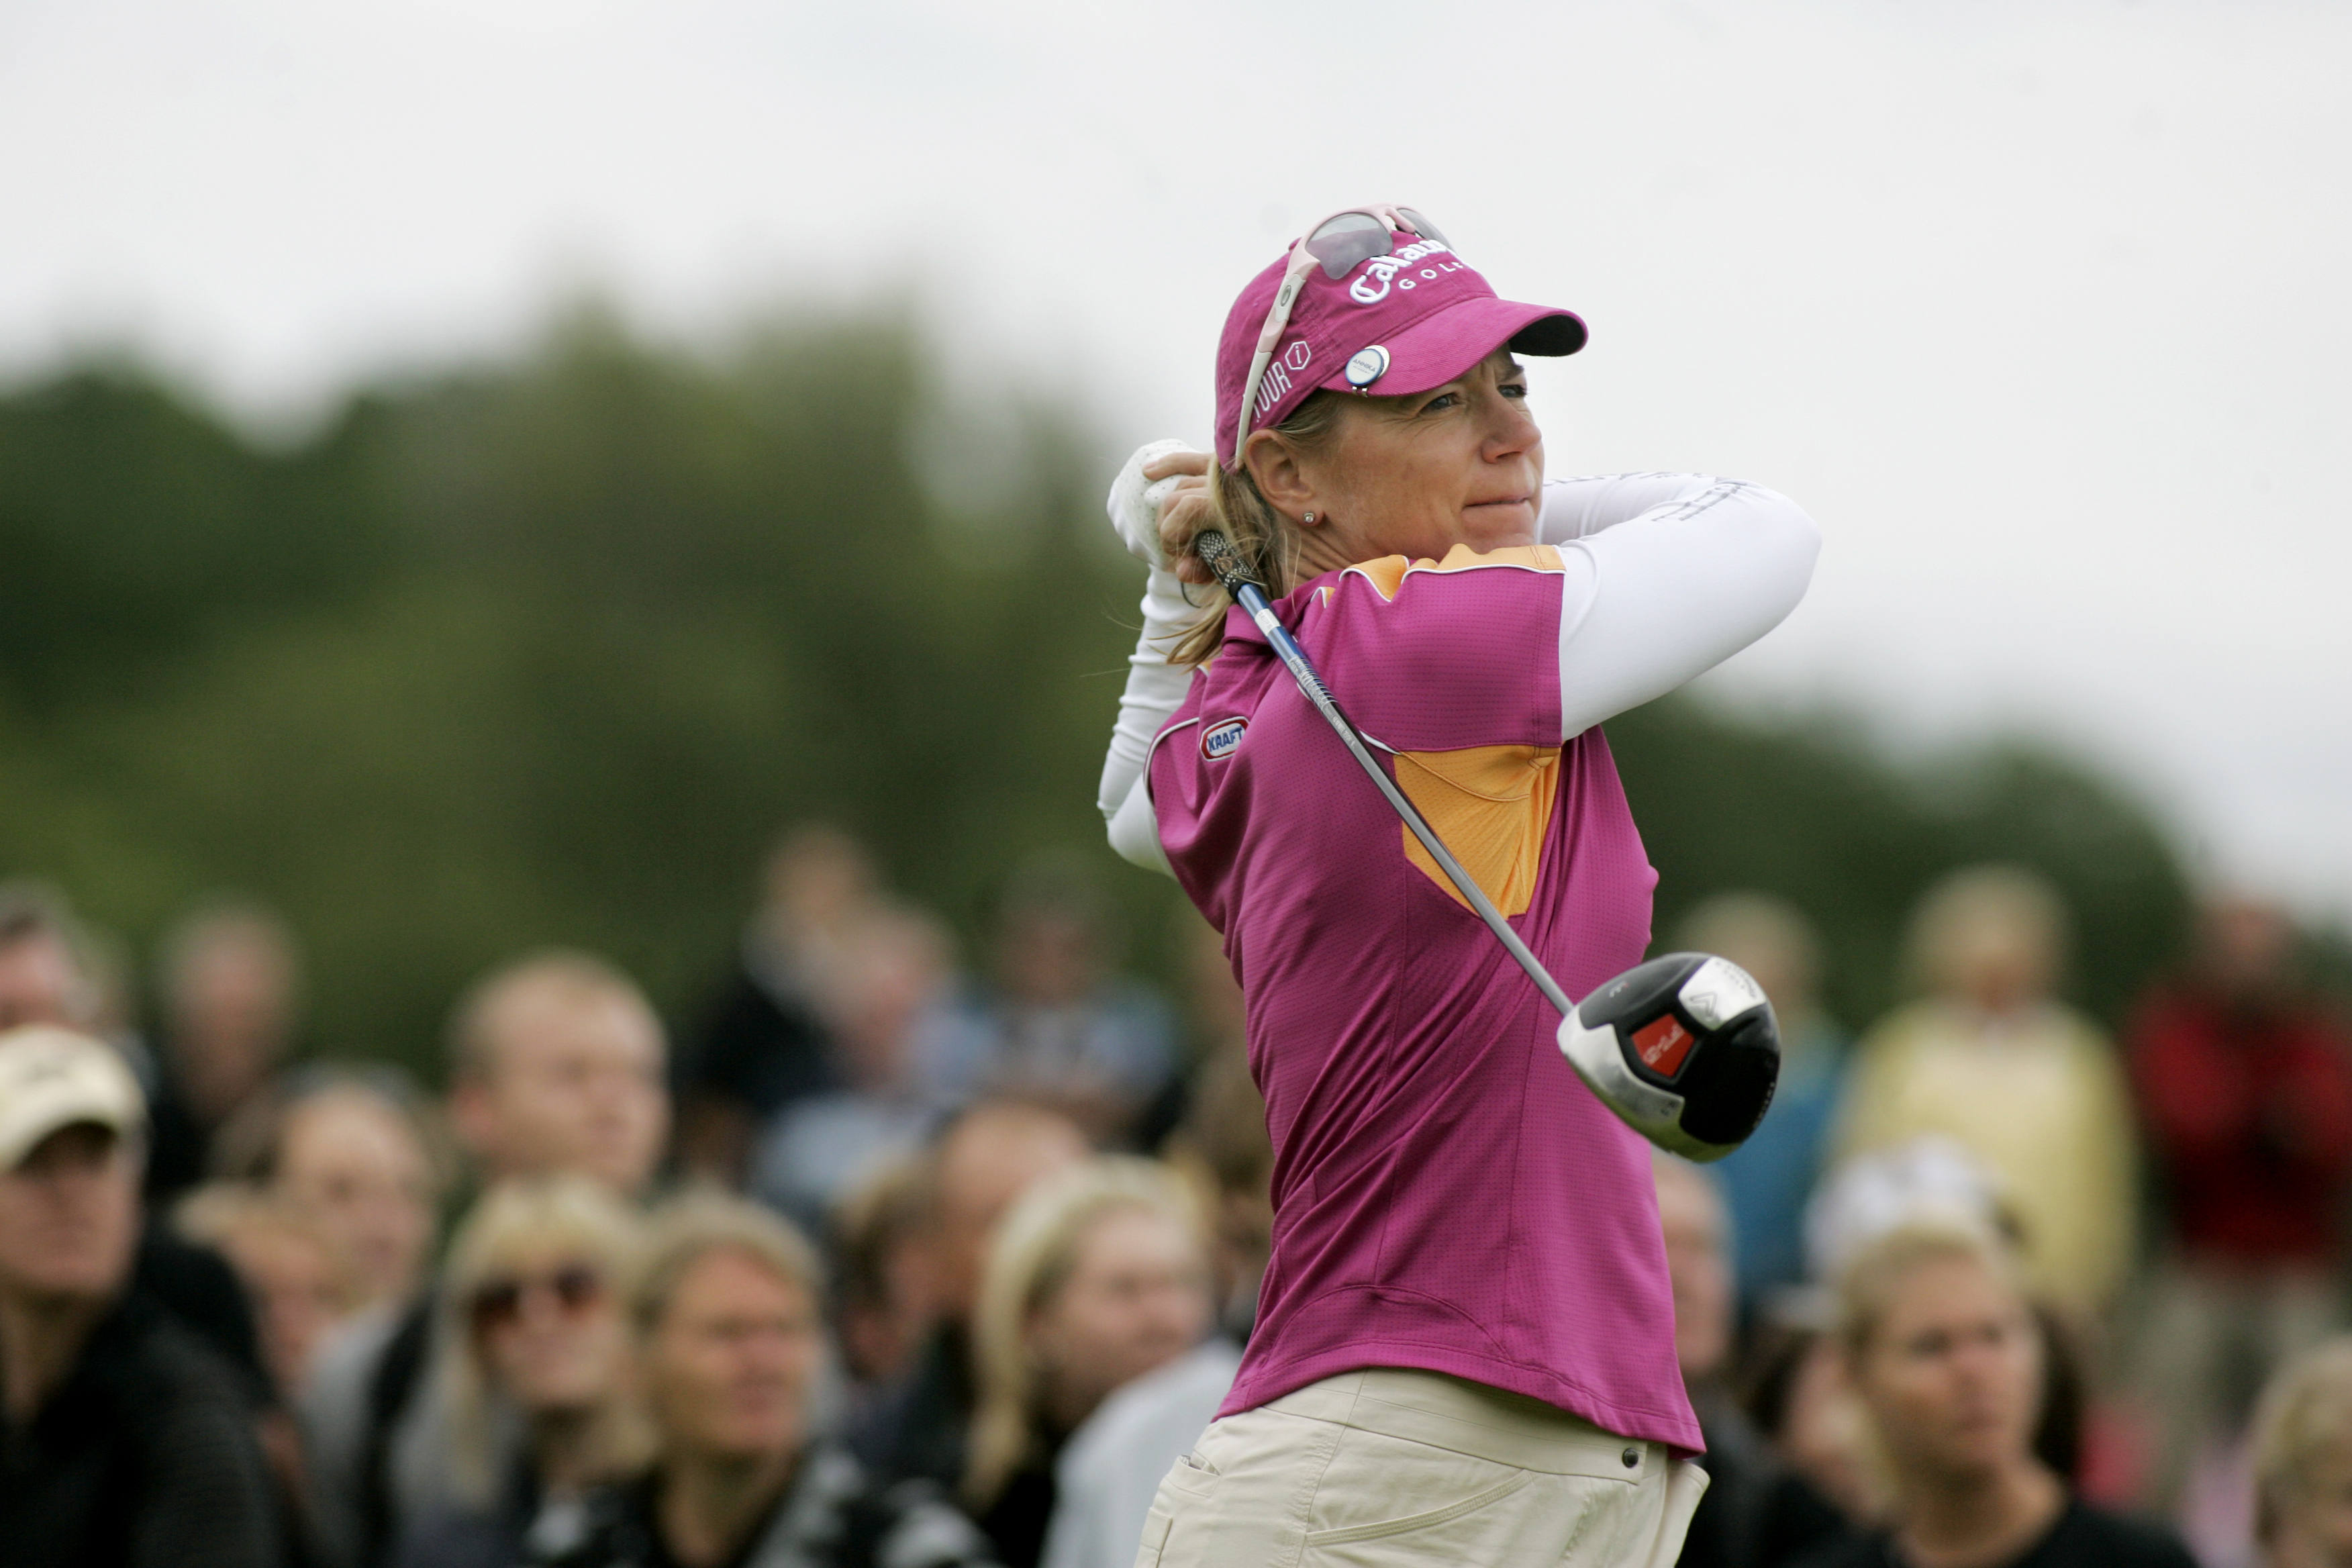 Golf lär inte vara med bland tävlingsmomenten, men Annika Sörenstam kanske är bra på flera saker?